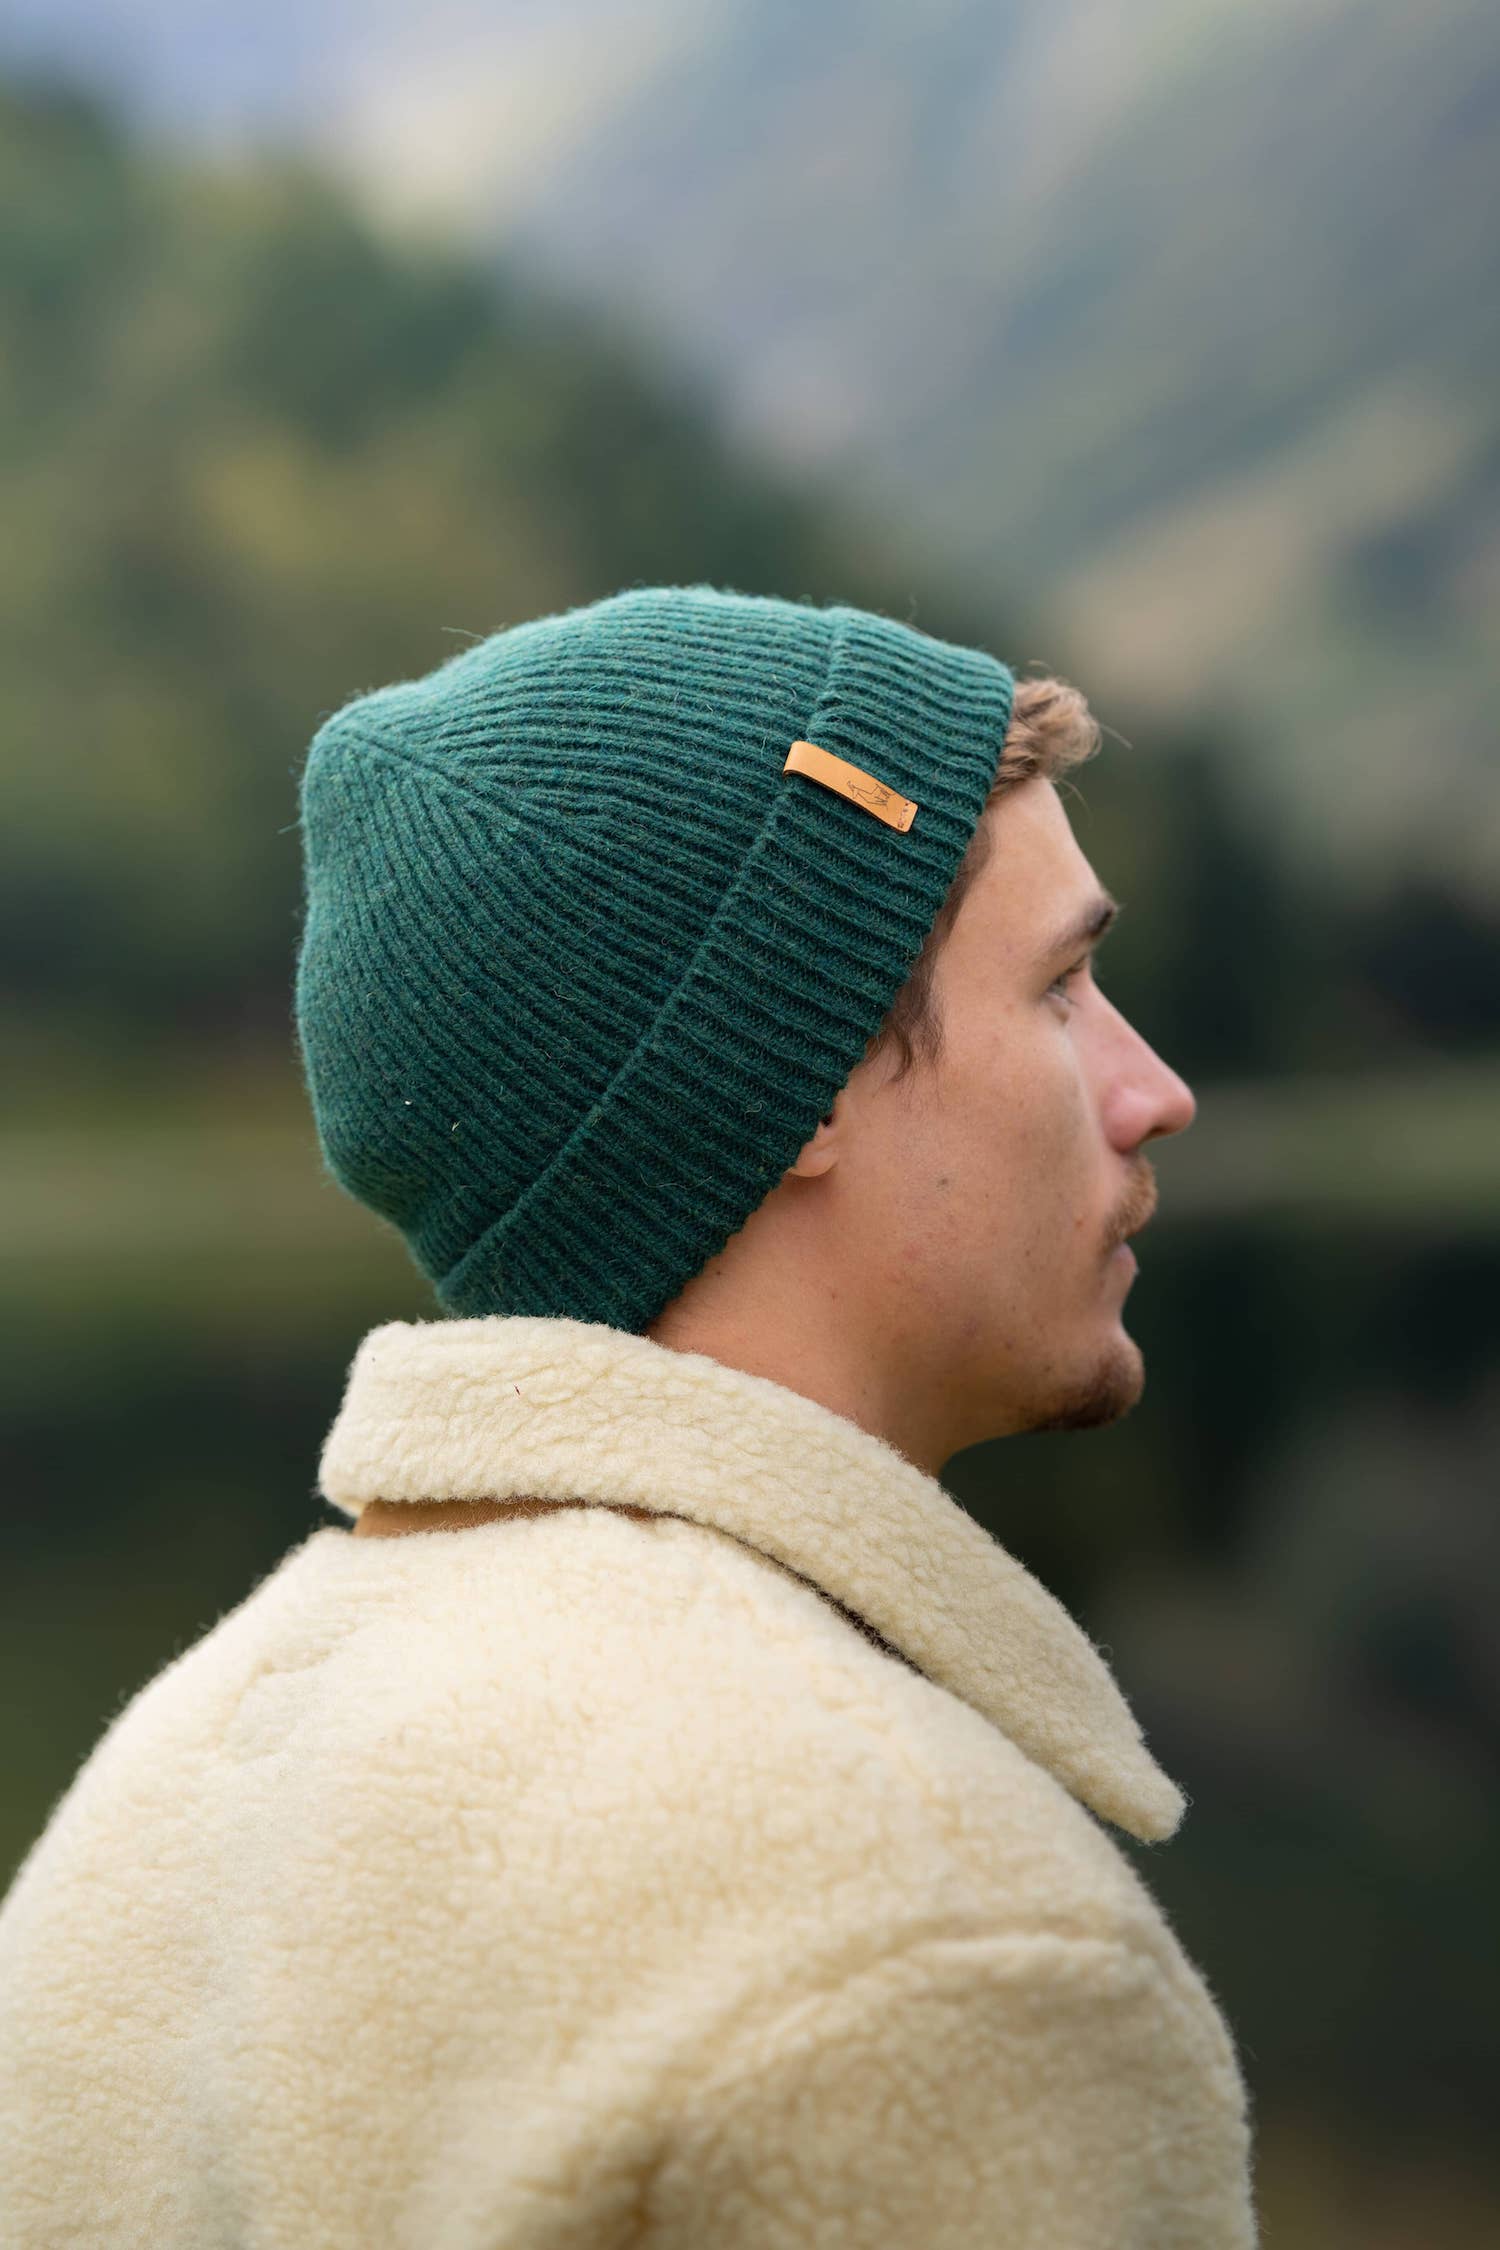 bonnet homme éthique et responsable, vert, en laine des Pyrénées et coton recyclé ♻️, made in France 🇫🇷, maison izard